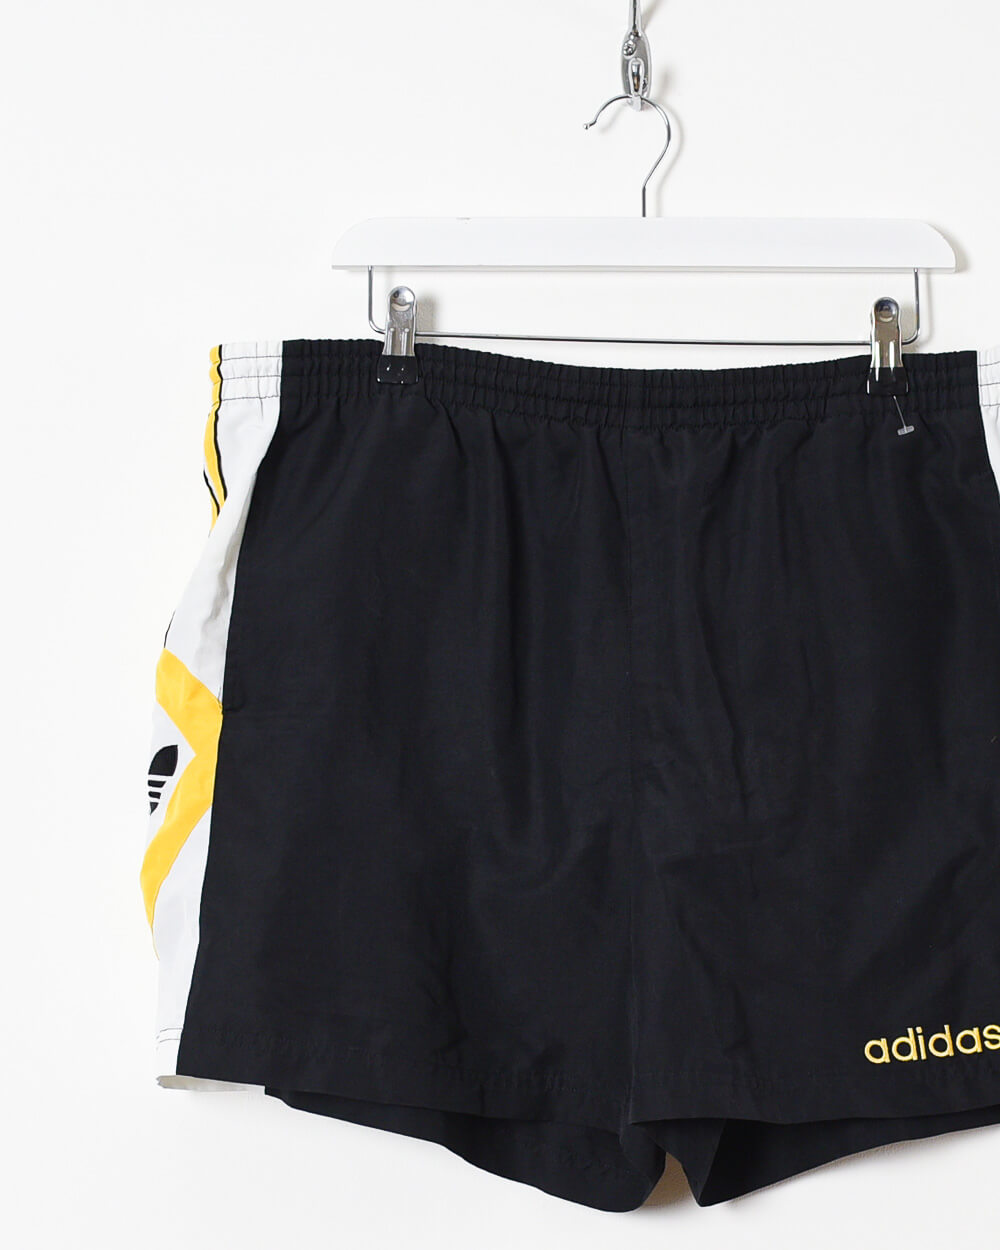 Black Adidas Shorts - W38